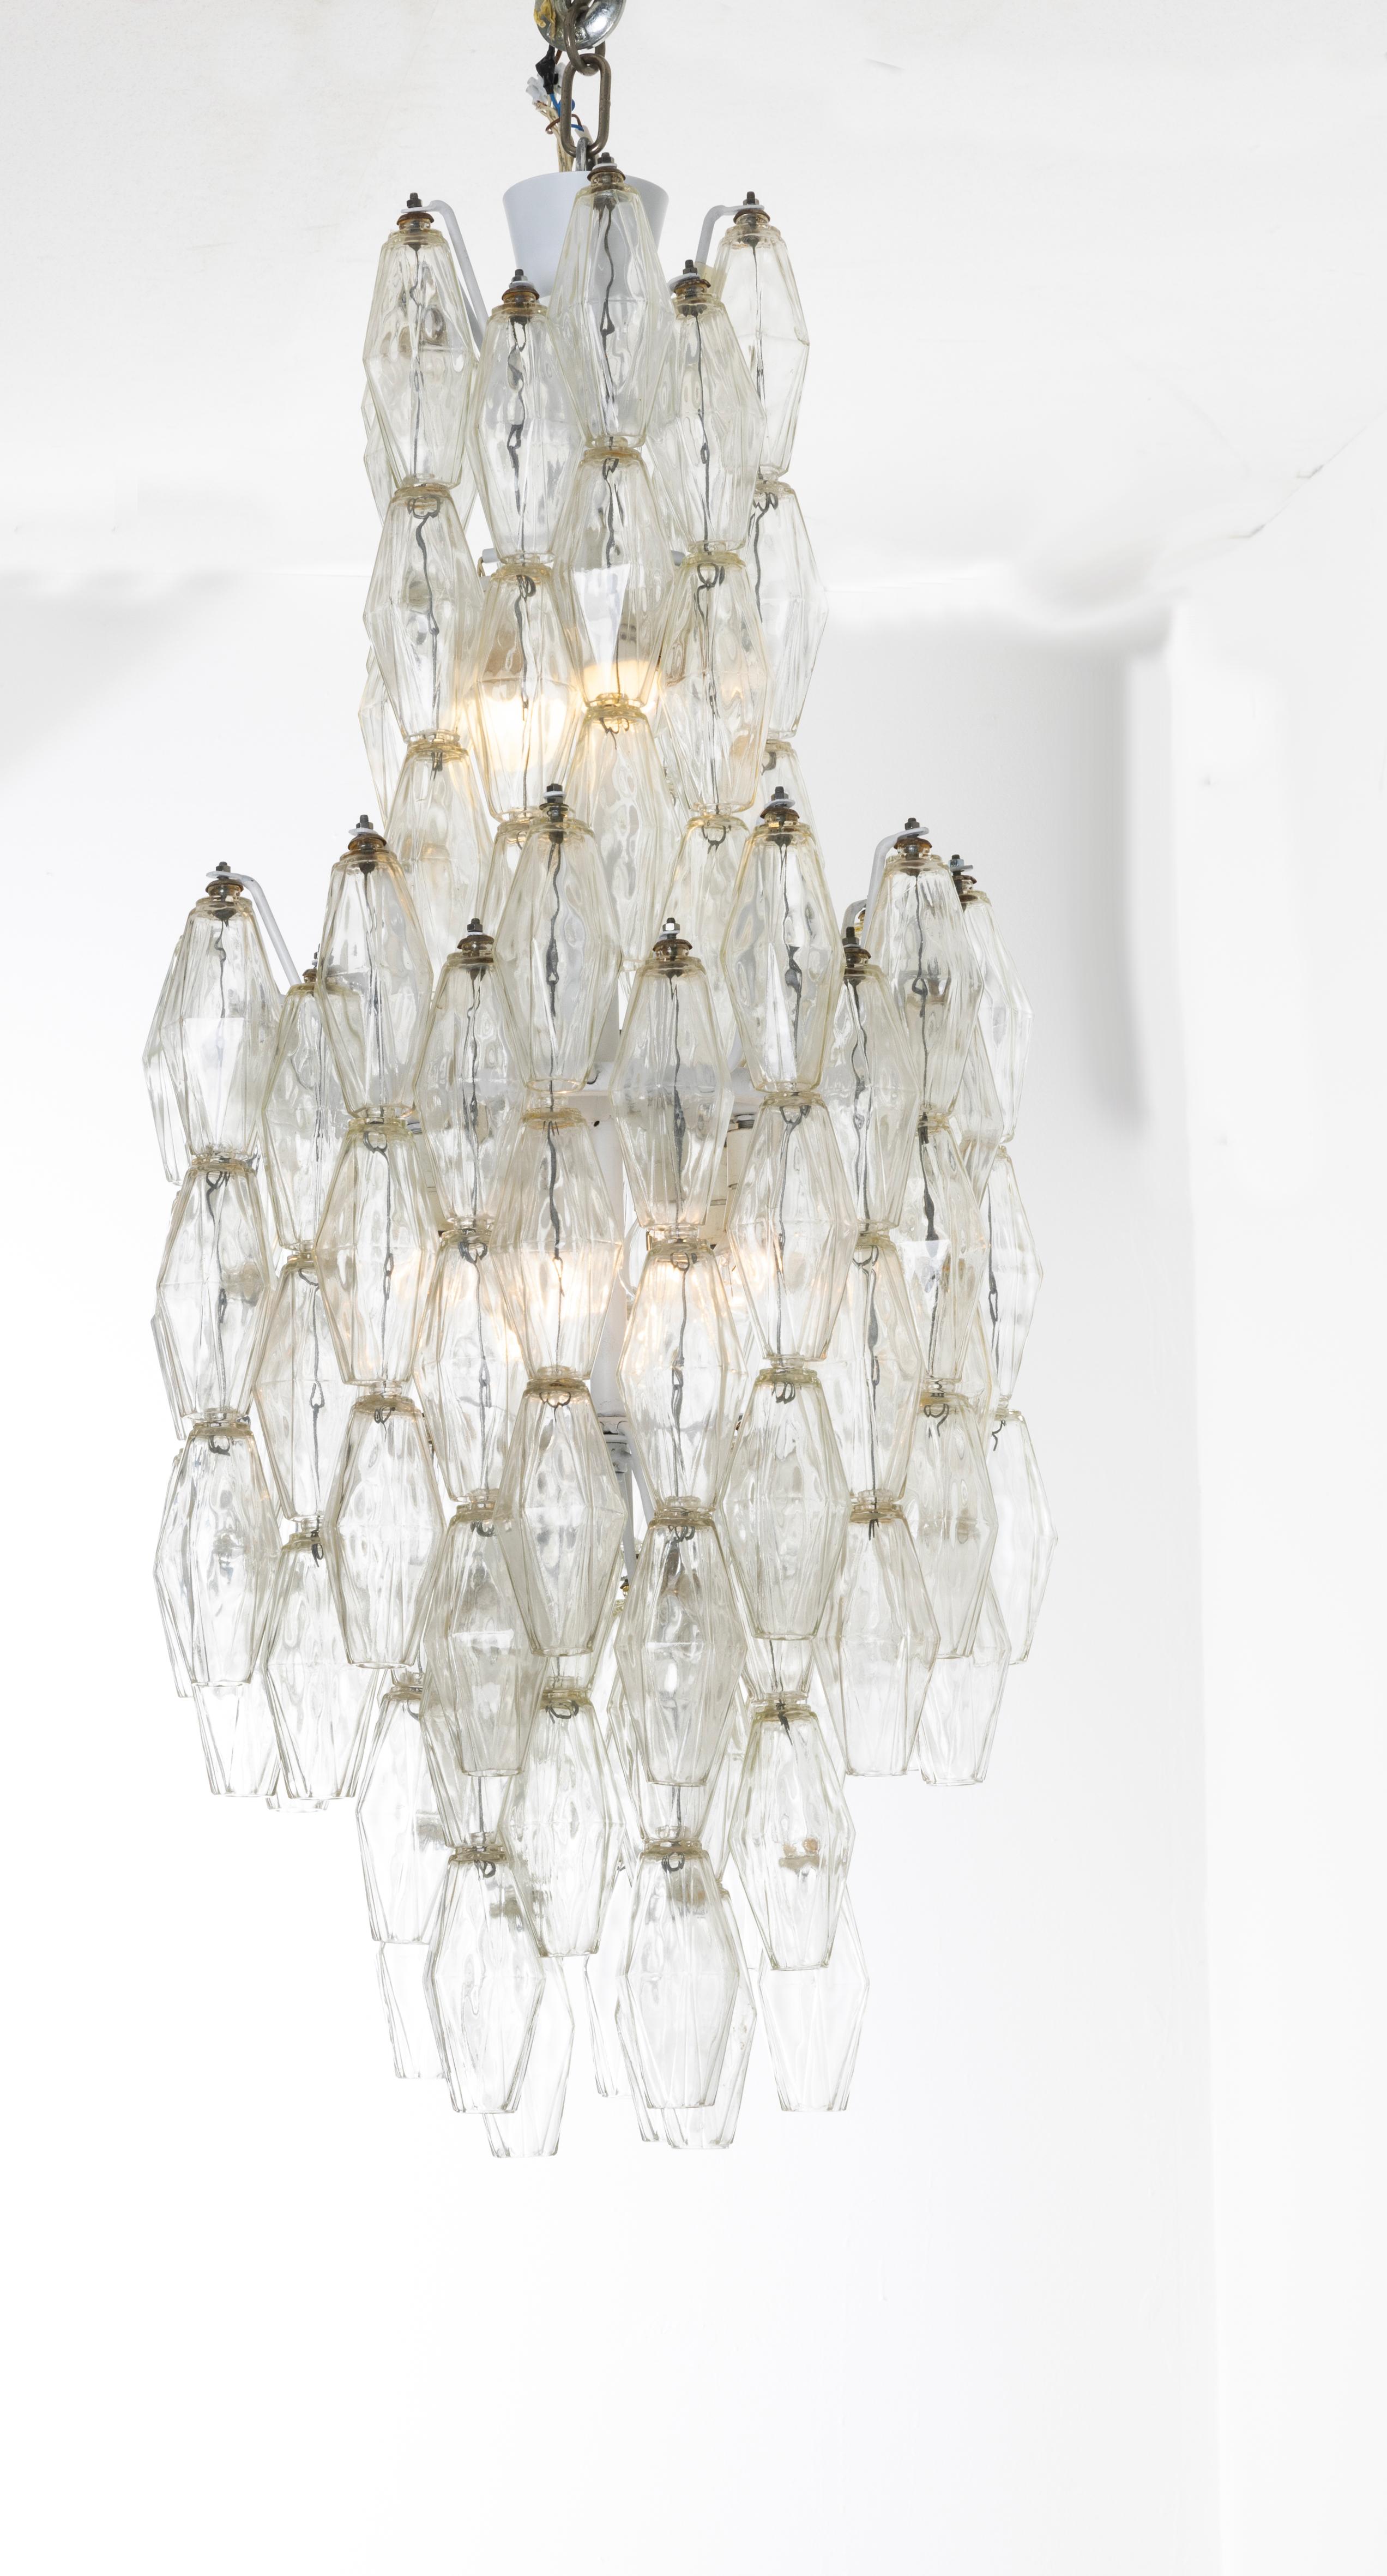 Carlo Scarpa for Venini Poliedri Murano glass chandelier, Italian Design 1960s In Good Condition For Sale In Milan, IT